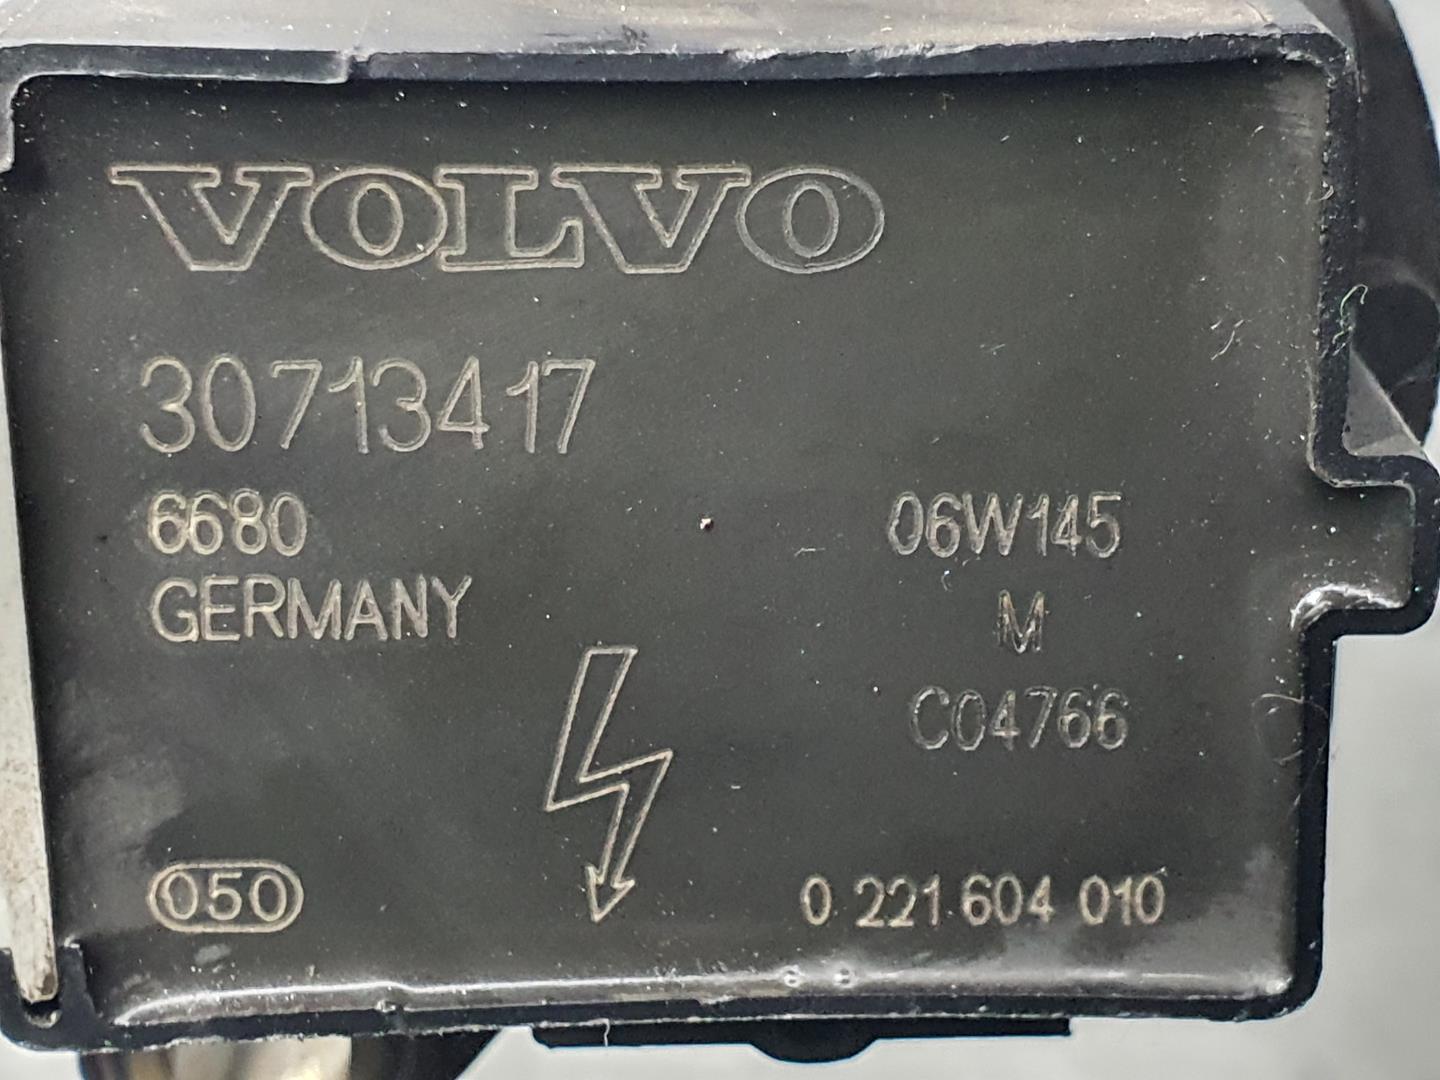 VOLVO C70 2 generation (2005-2013) Bobine d'allumage haute tension 30713417, 0221604010 23619625